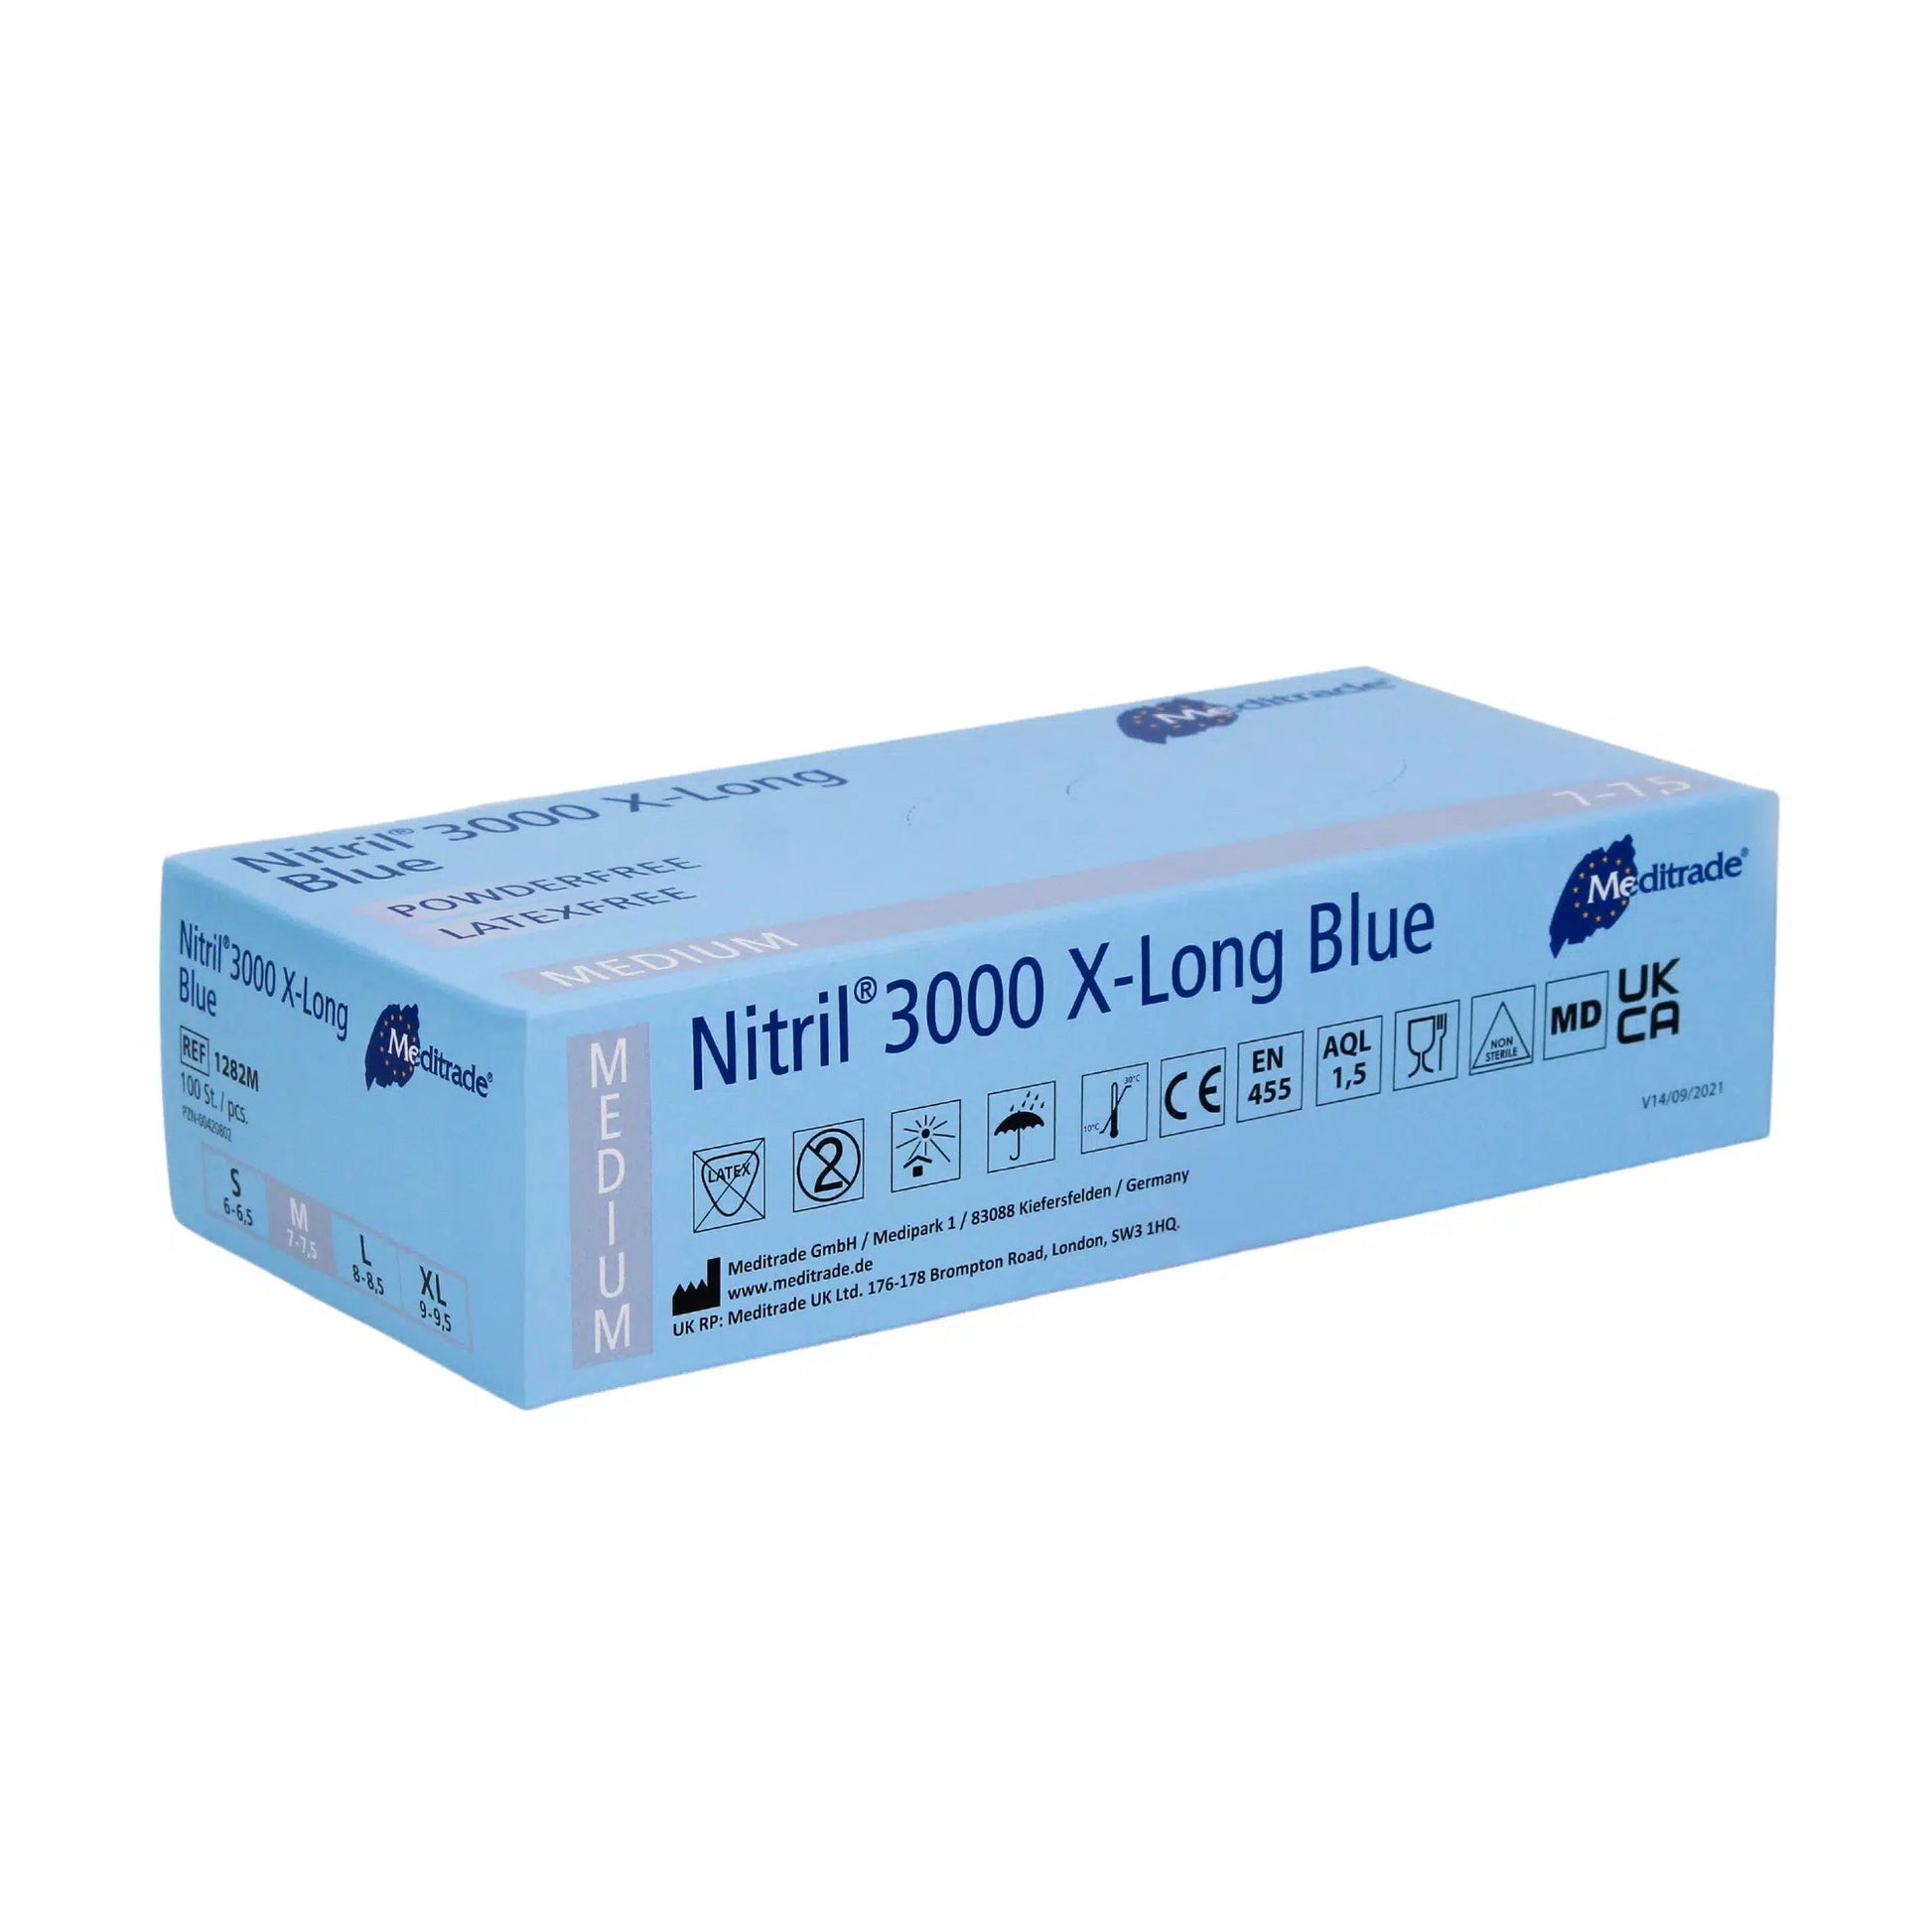 Eine Schachtel Meditrade Nitril® 3000 X-Long 100 Stk. Nitrilhandschuhe extralang, blau in Größe Medium, mit blauer Verpackung mit Produktdetails und Zertifizierungen. Diese Nitrilhandschuhe bieten Schutz durch die Meditrade GmbH.